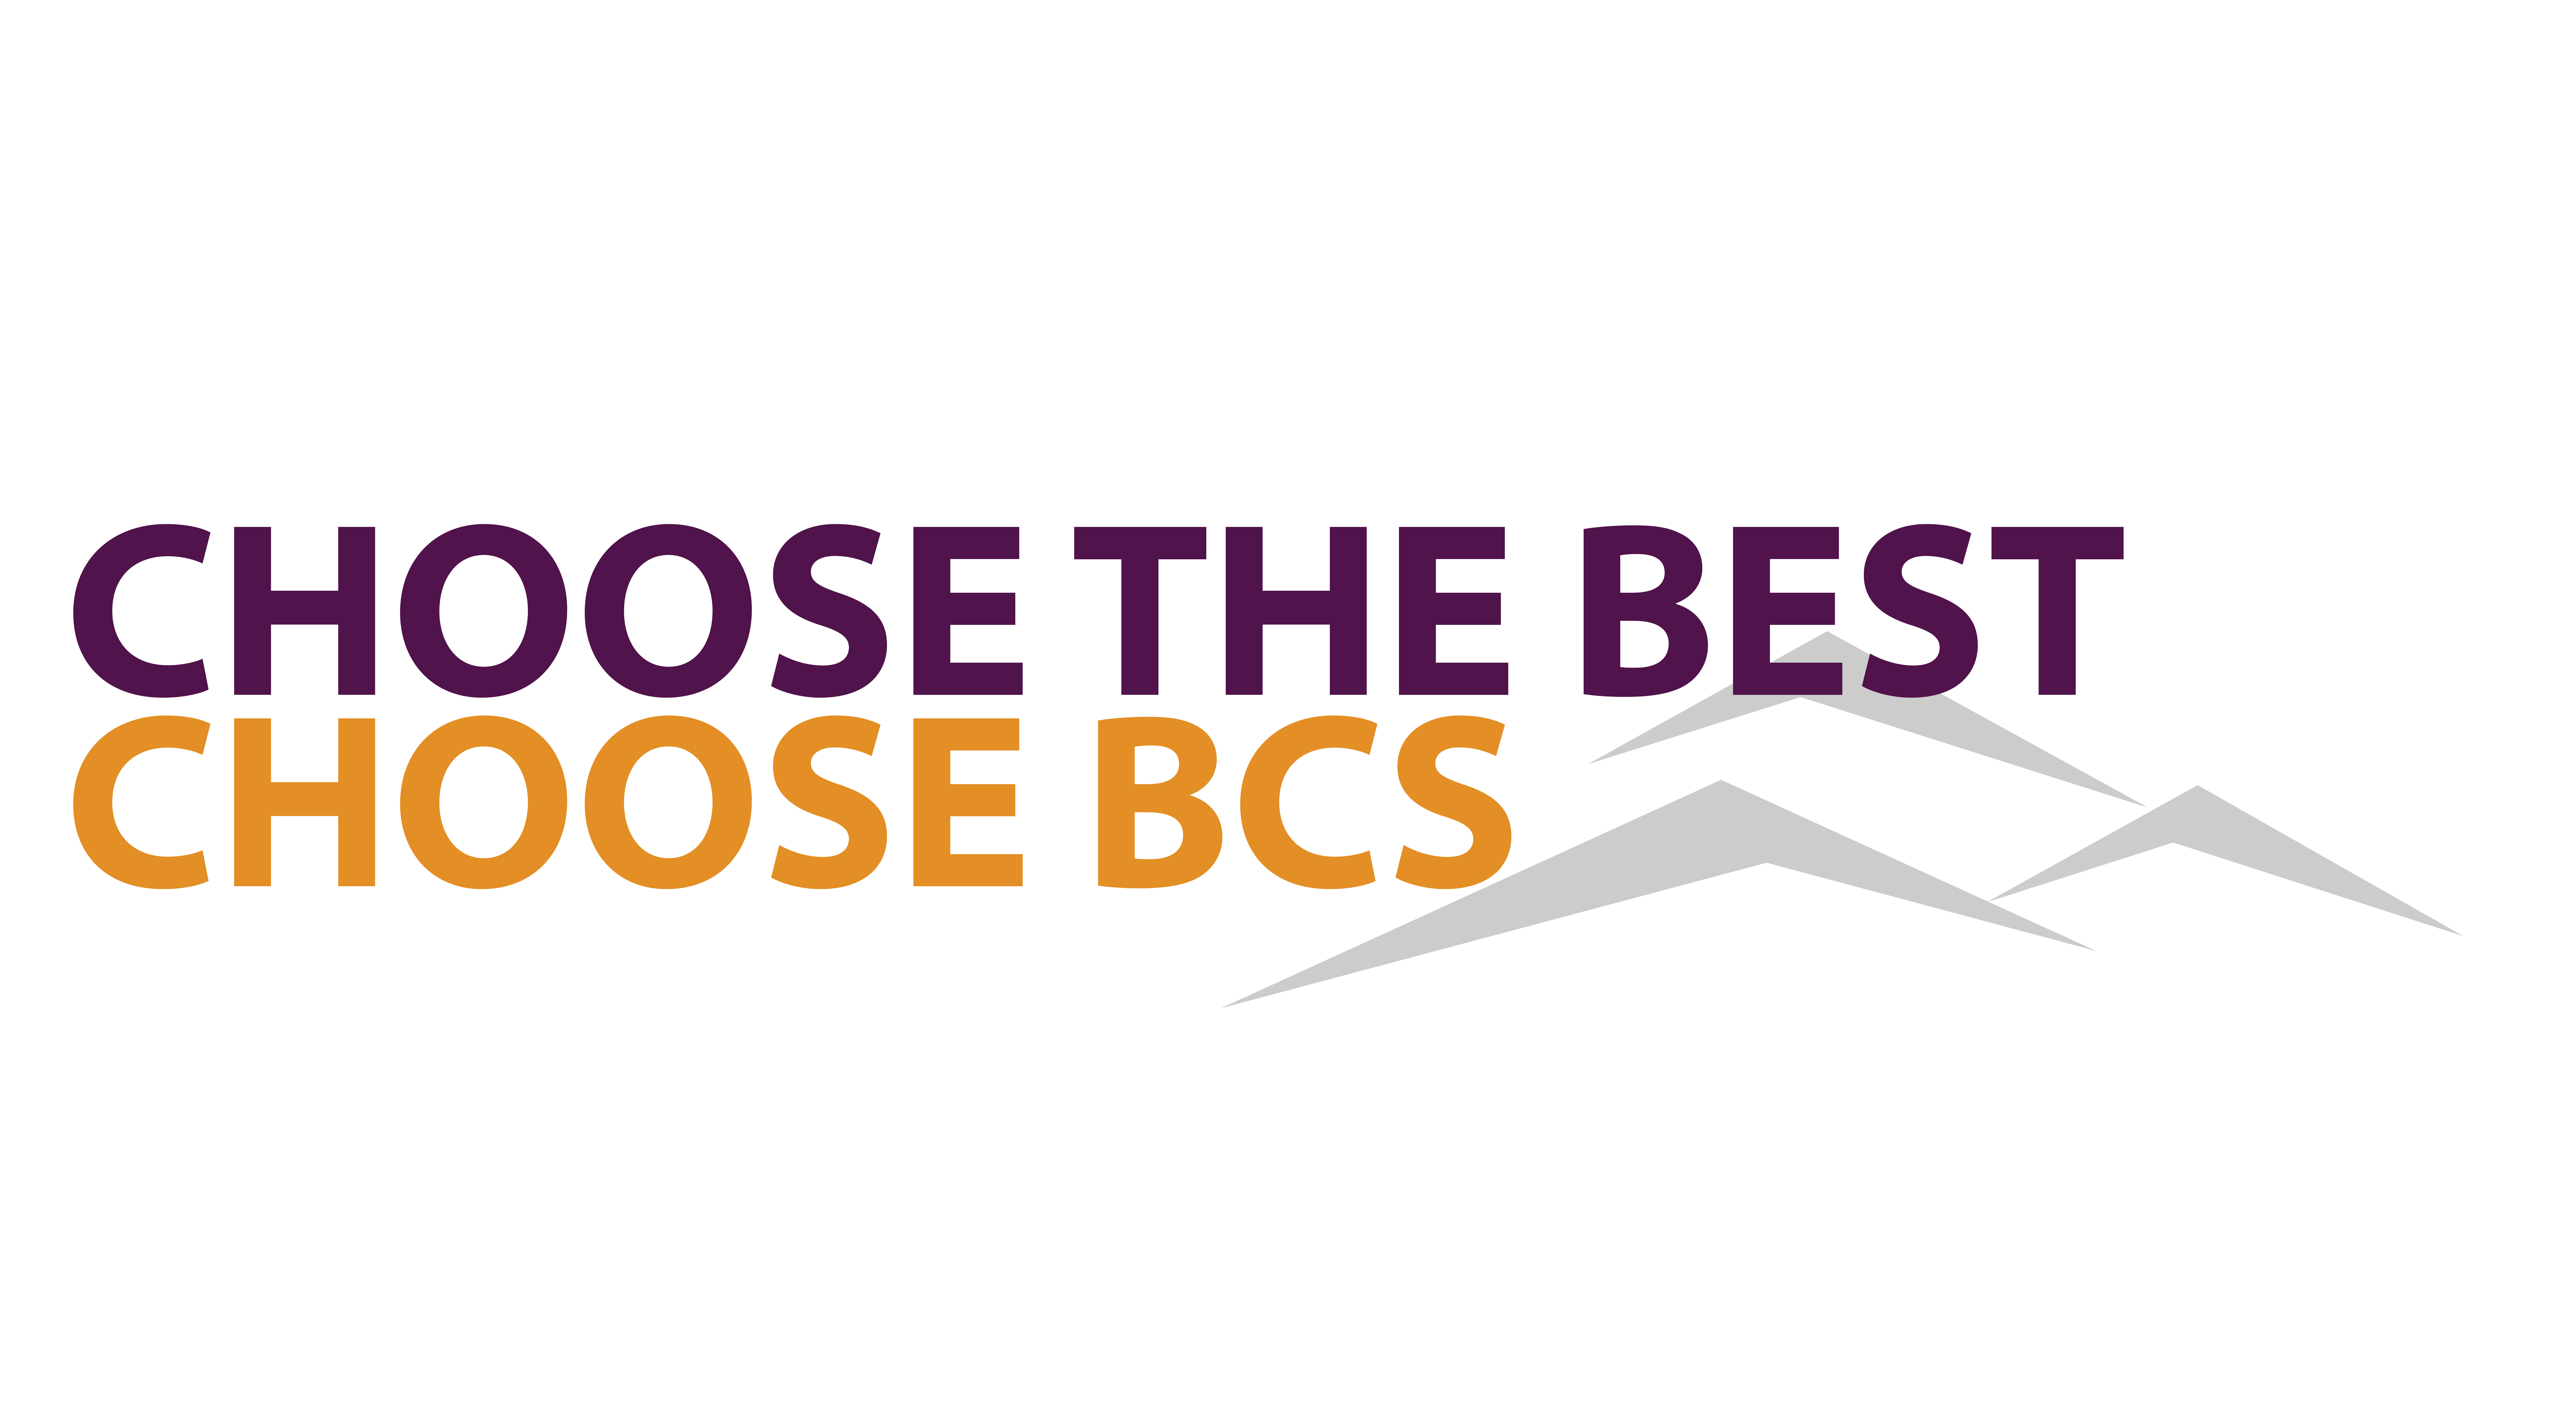 Choose the best, choose BCS